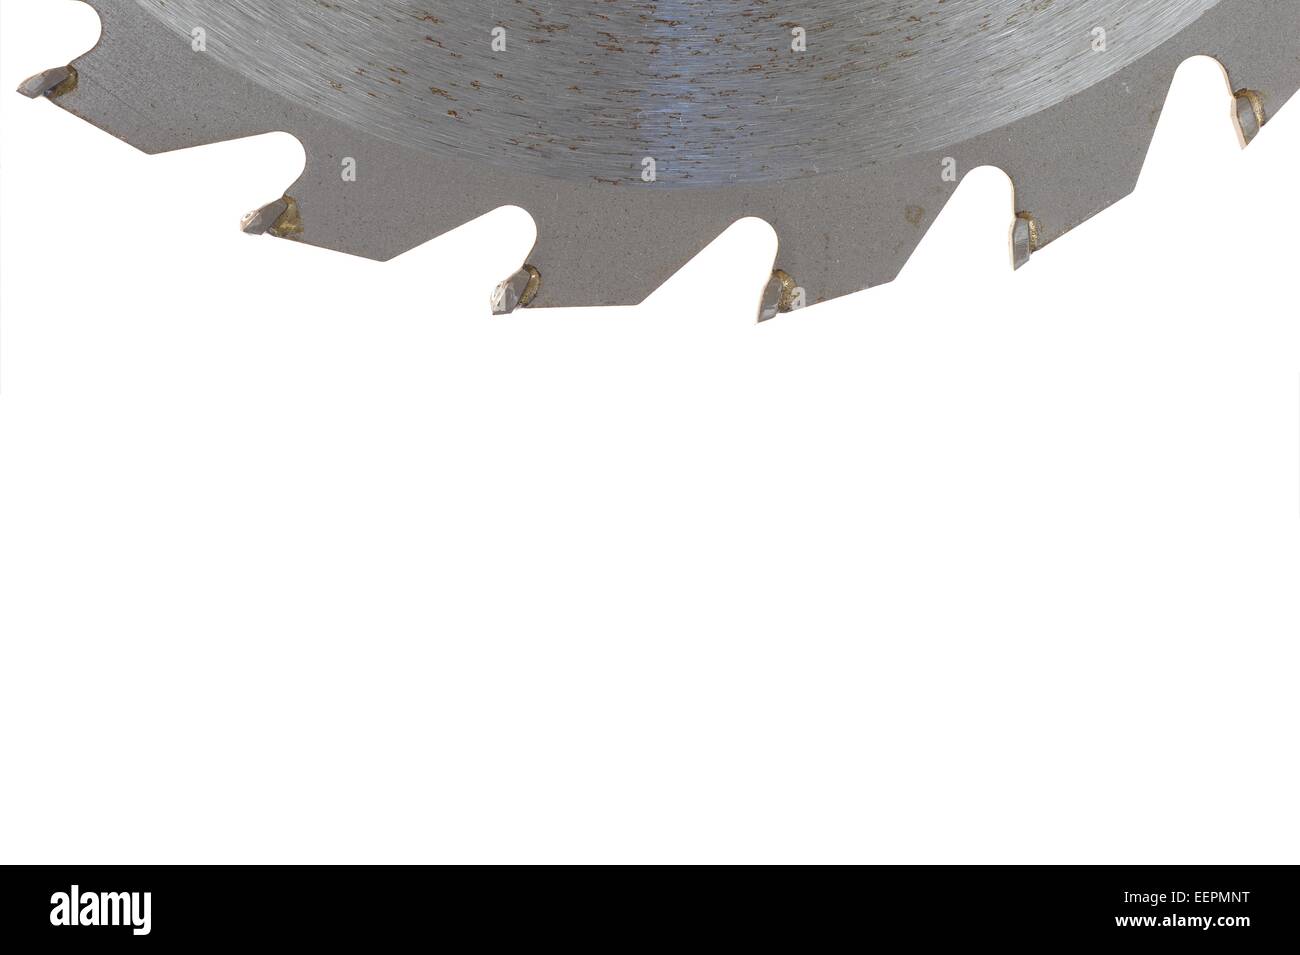 A close up shot of a circular saw blade Stock Photo